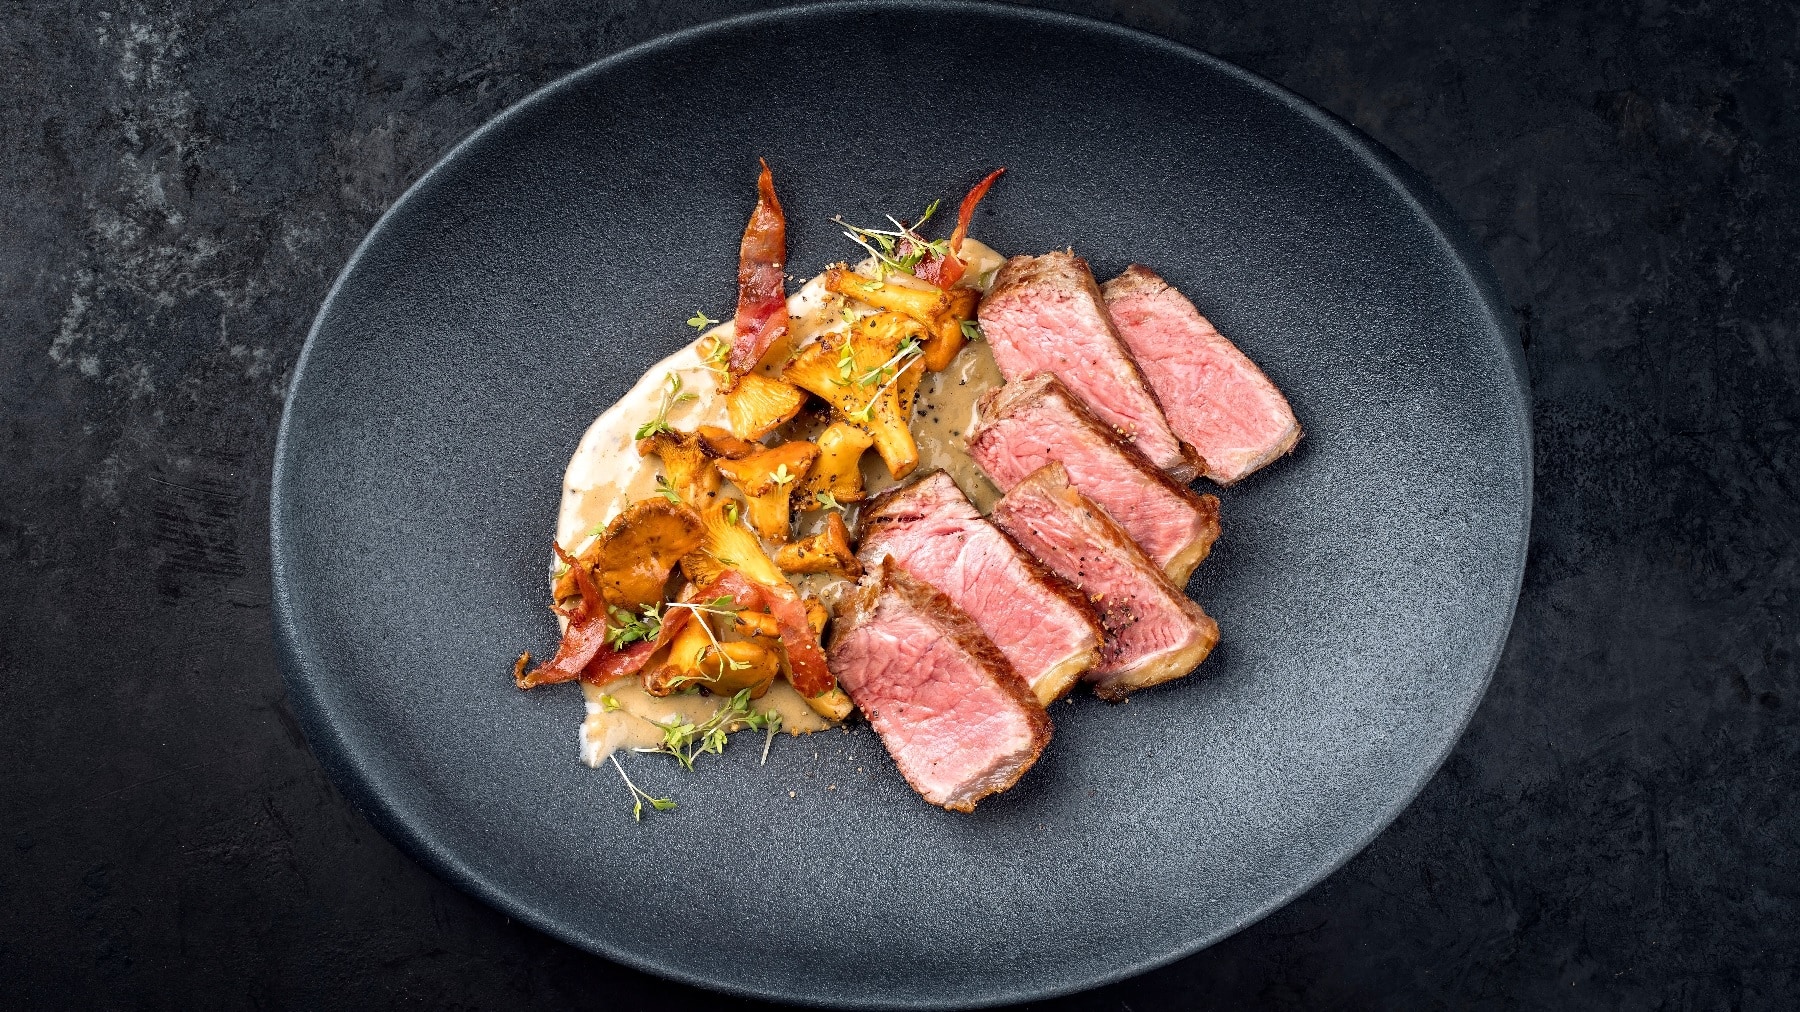 Ein in Scheiben geschnittenes Steak auf einem schwarzen Teller mit Sauce und den Pfifferlingen auf der linken Seite des Tellers.